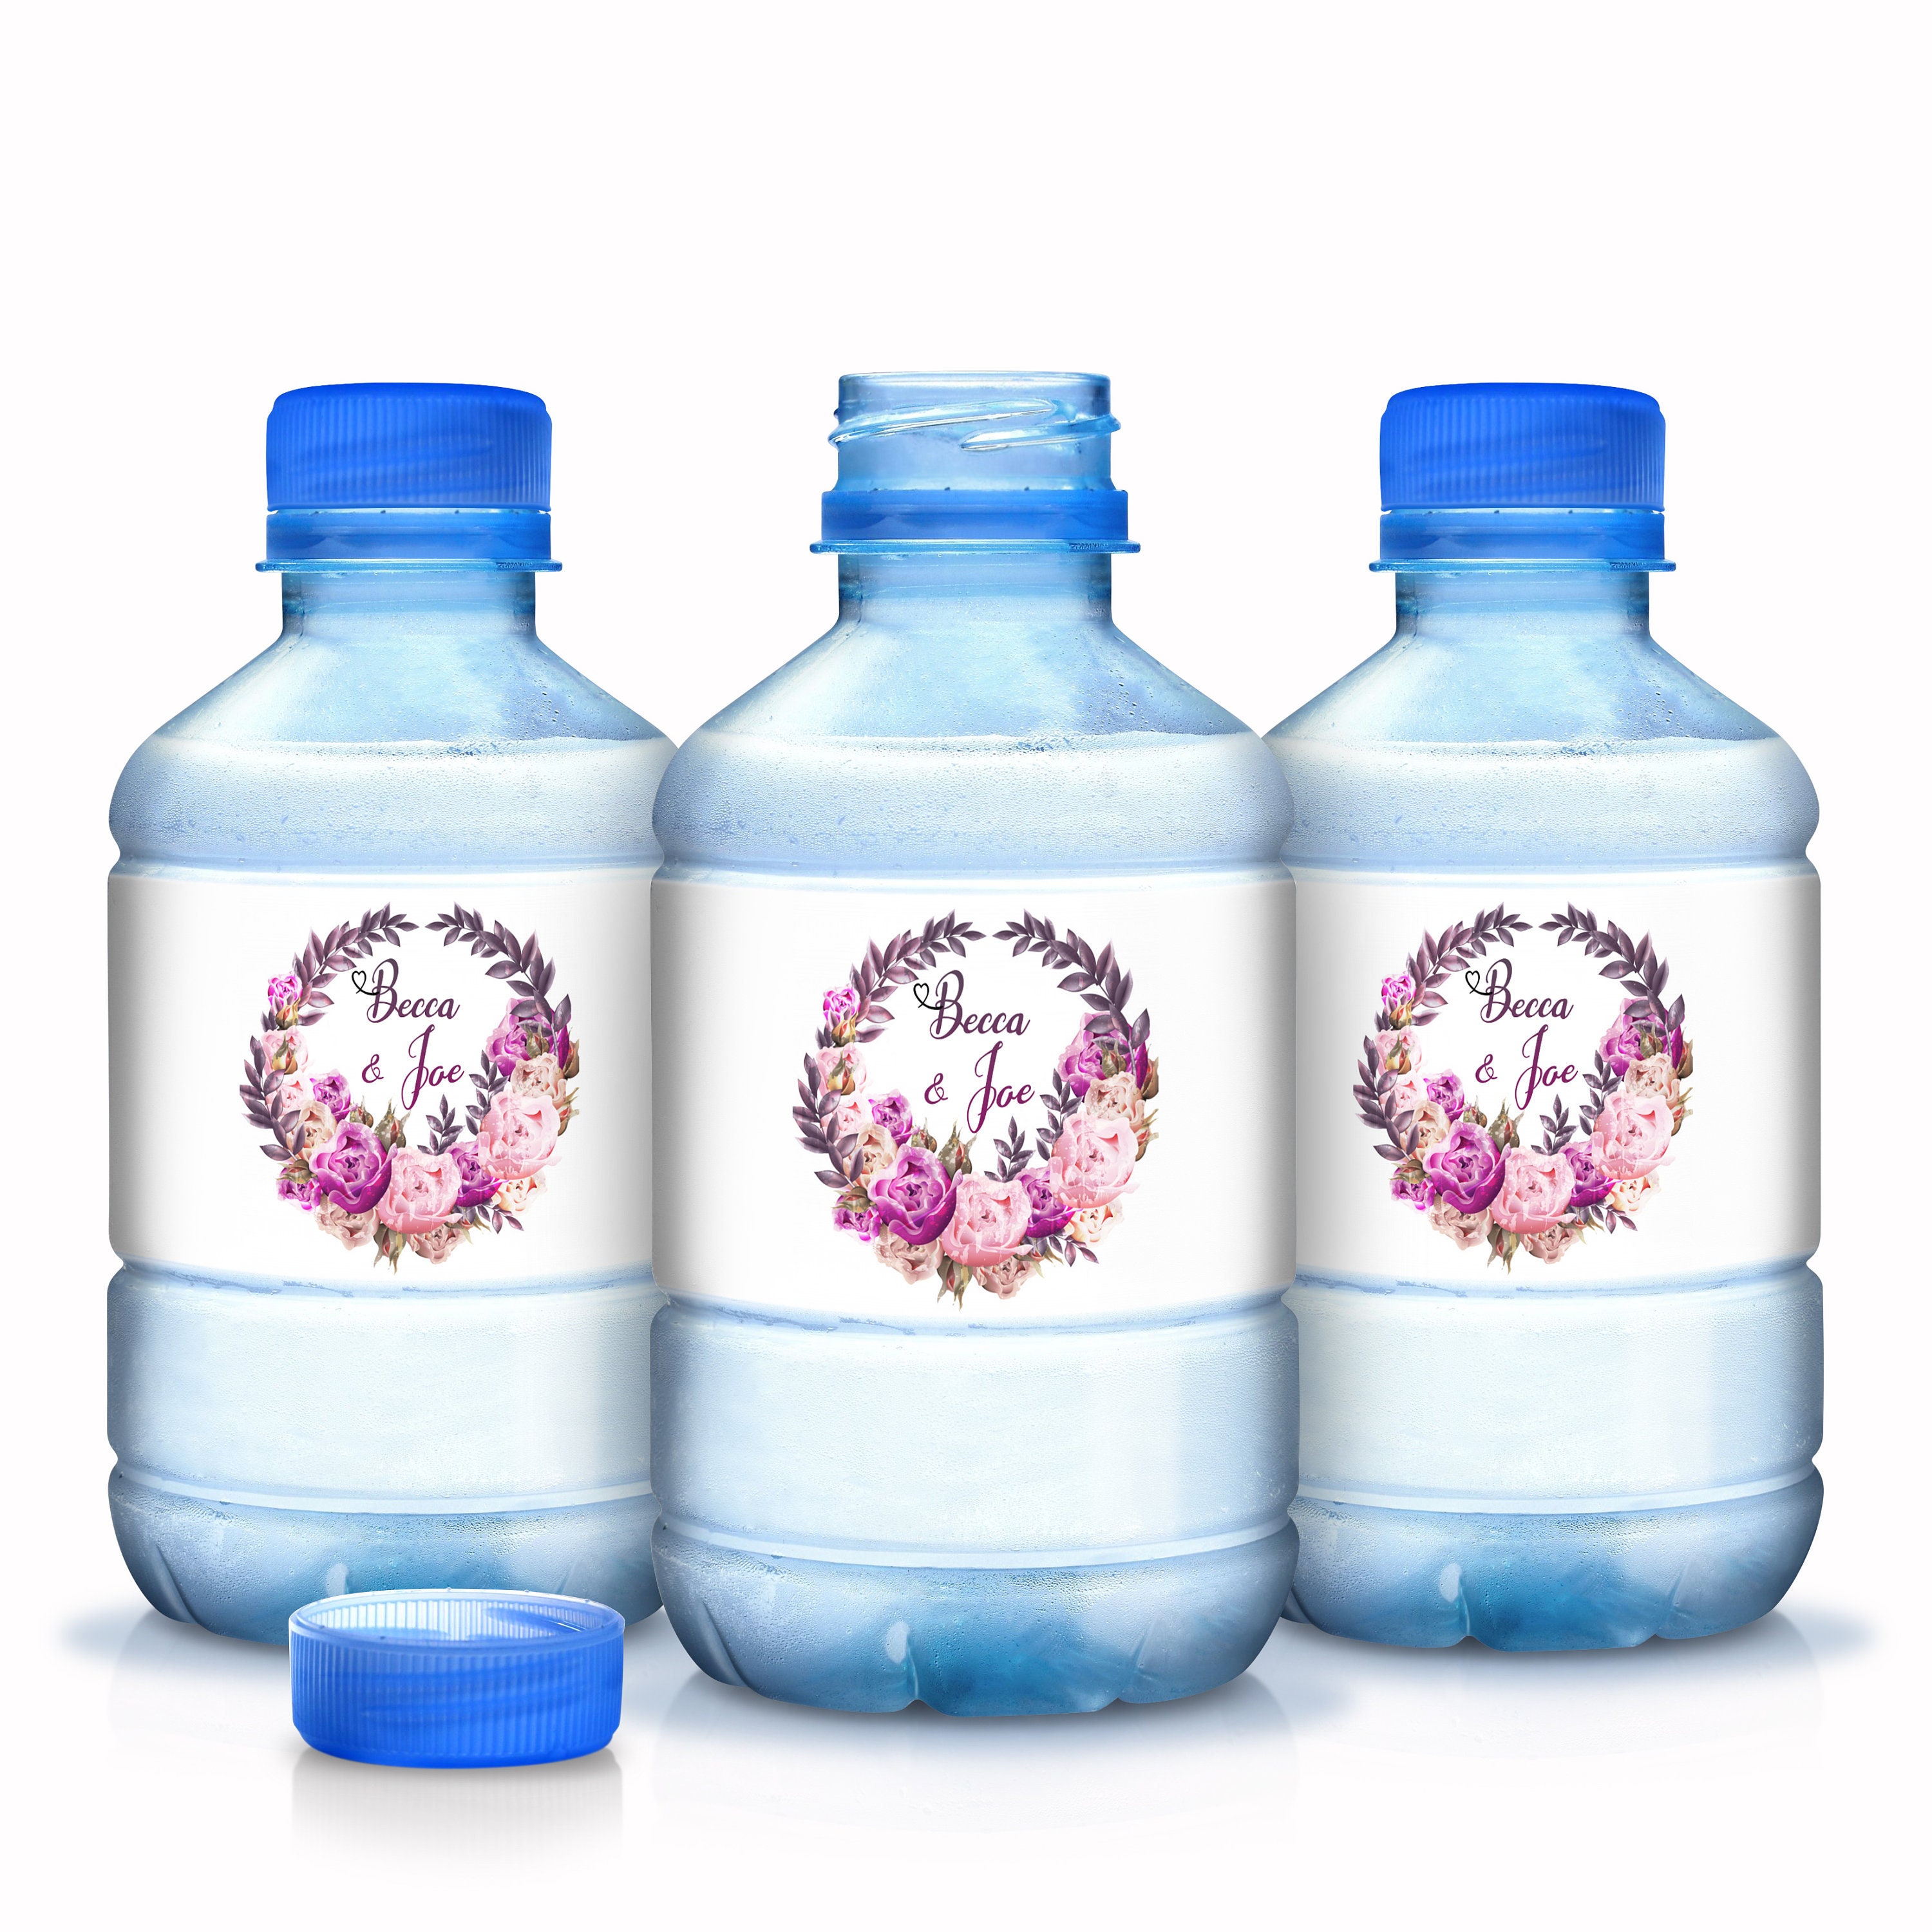 30 Wedding Water Bottle Labels - Fuchsia Light Pink & Purple Floral Wreath Waterproof